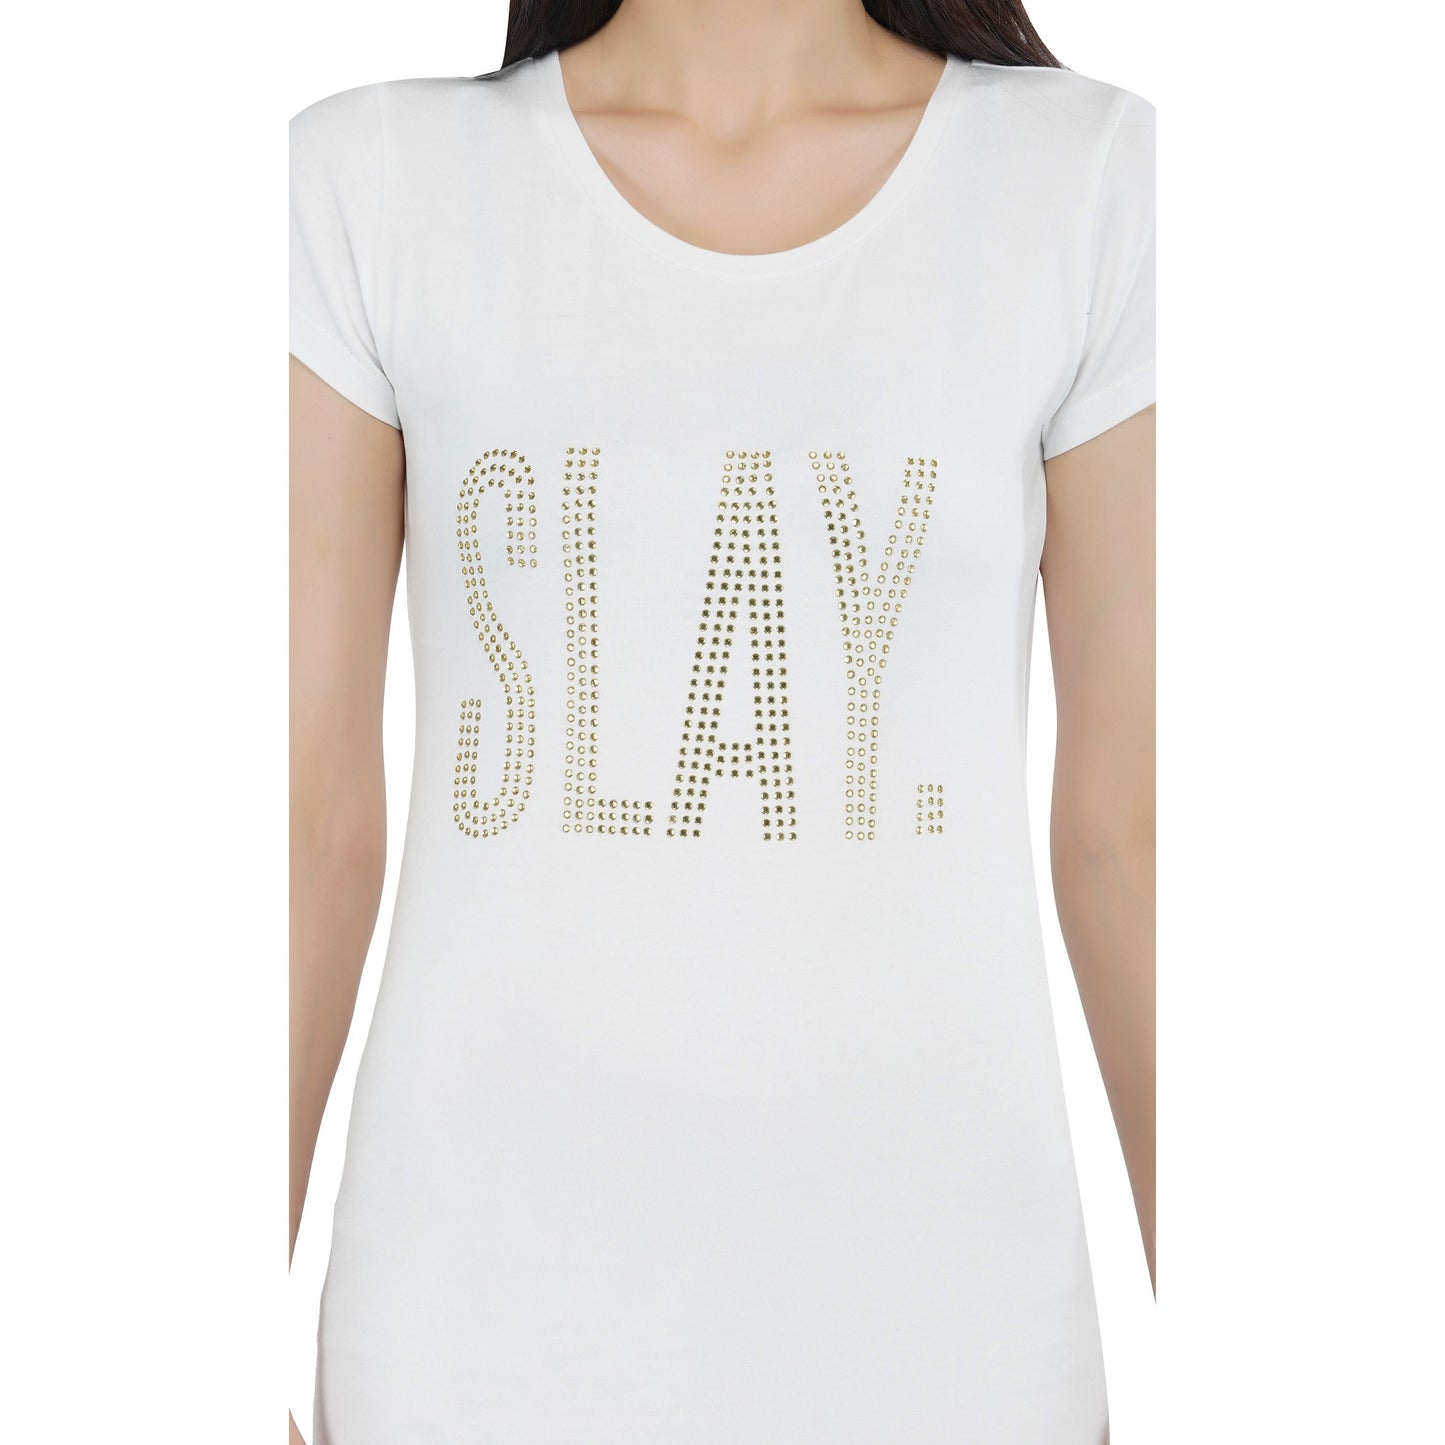 SLAY. Women's Golden Crystal Embellished White T-shirt Dress-clothing-to-slay.myshopify.com-Dress